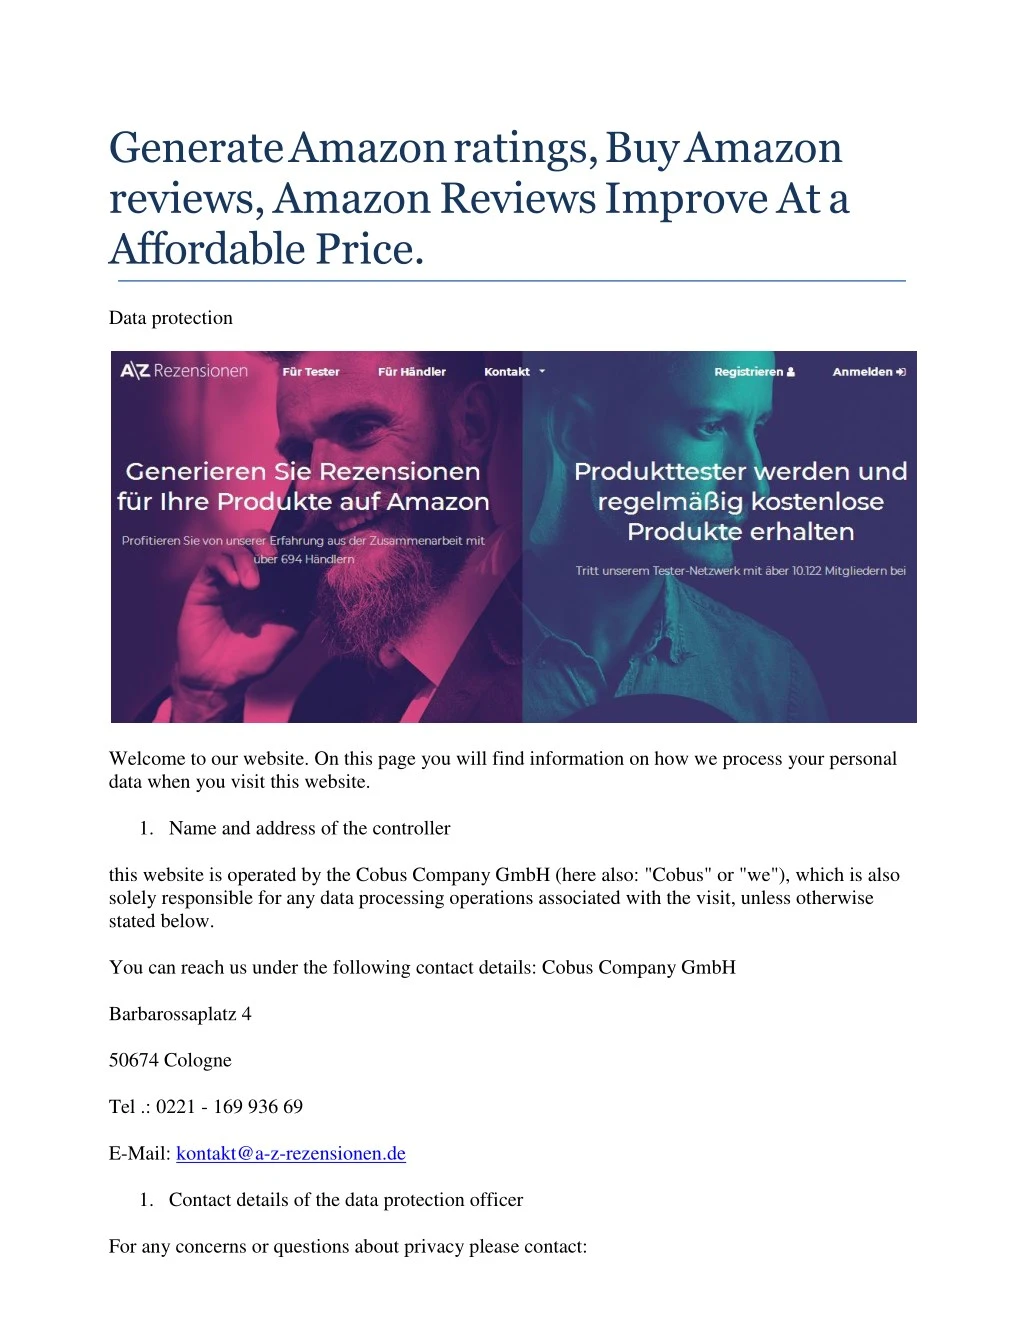 generate amazon ratings buy amazon reviews amazon